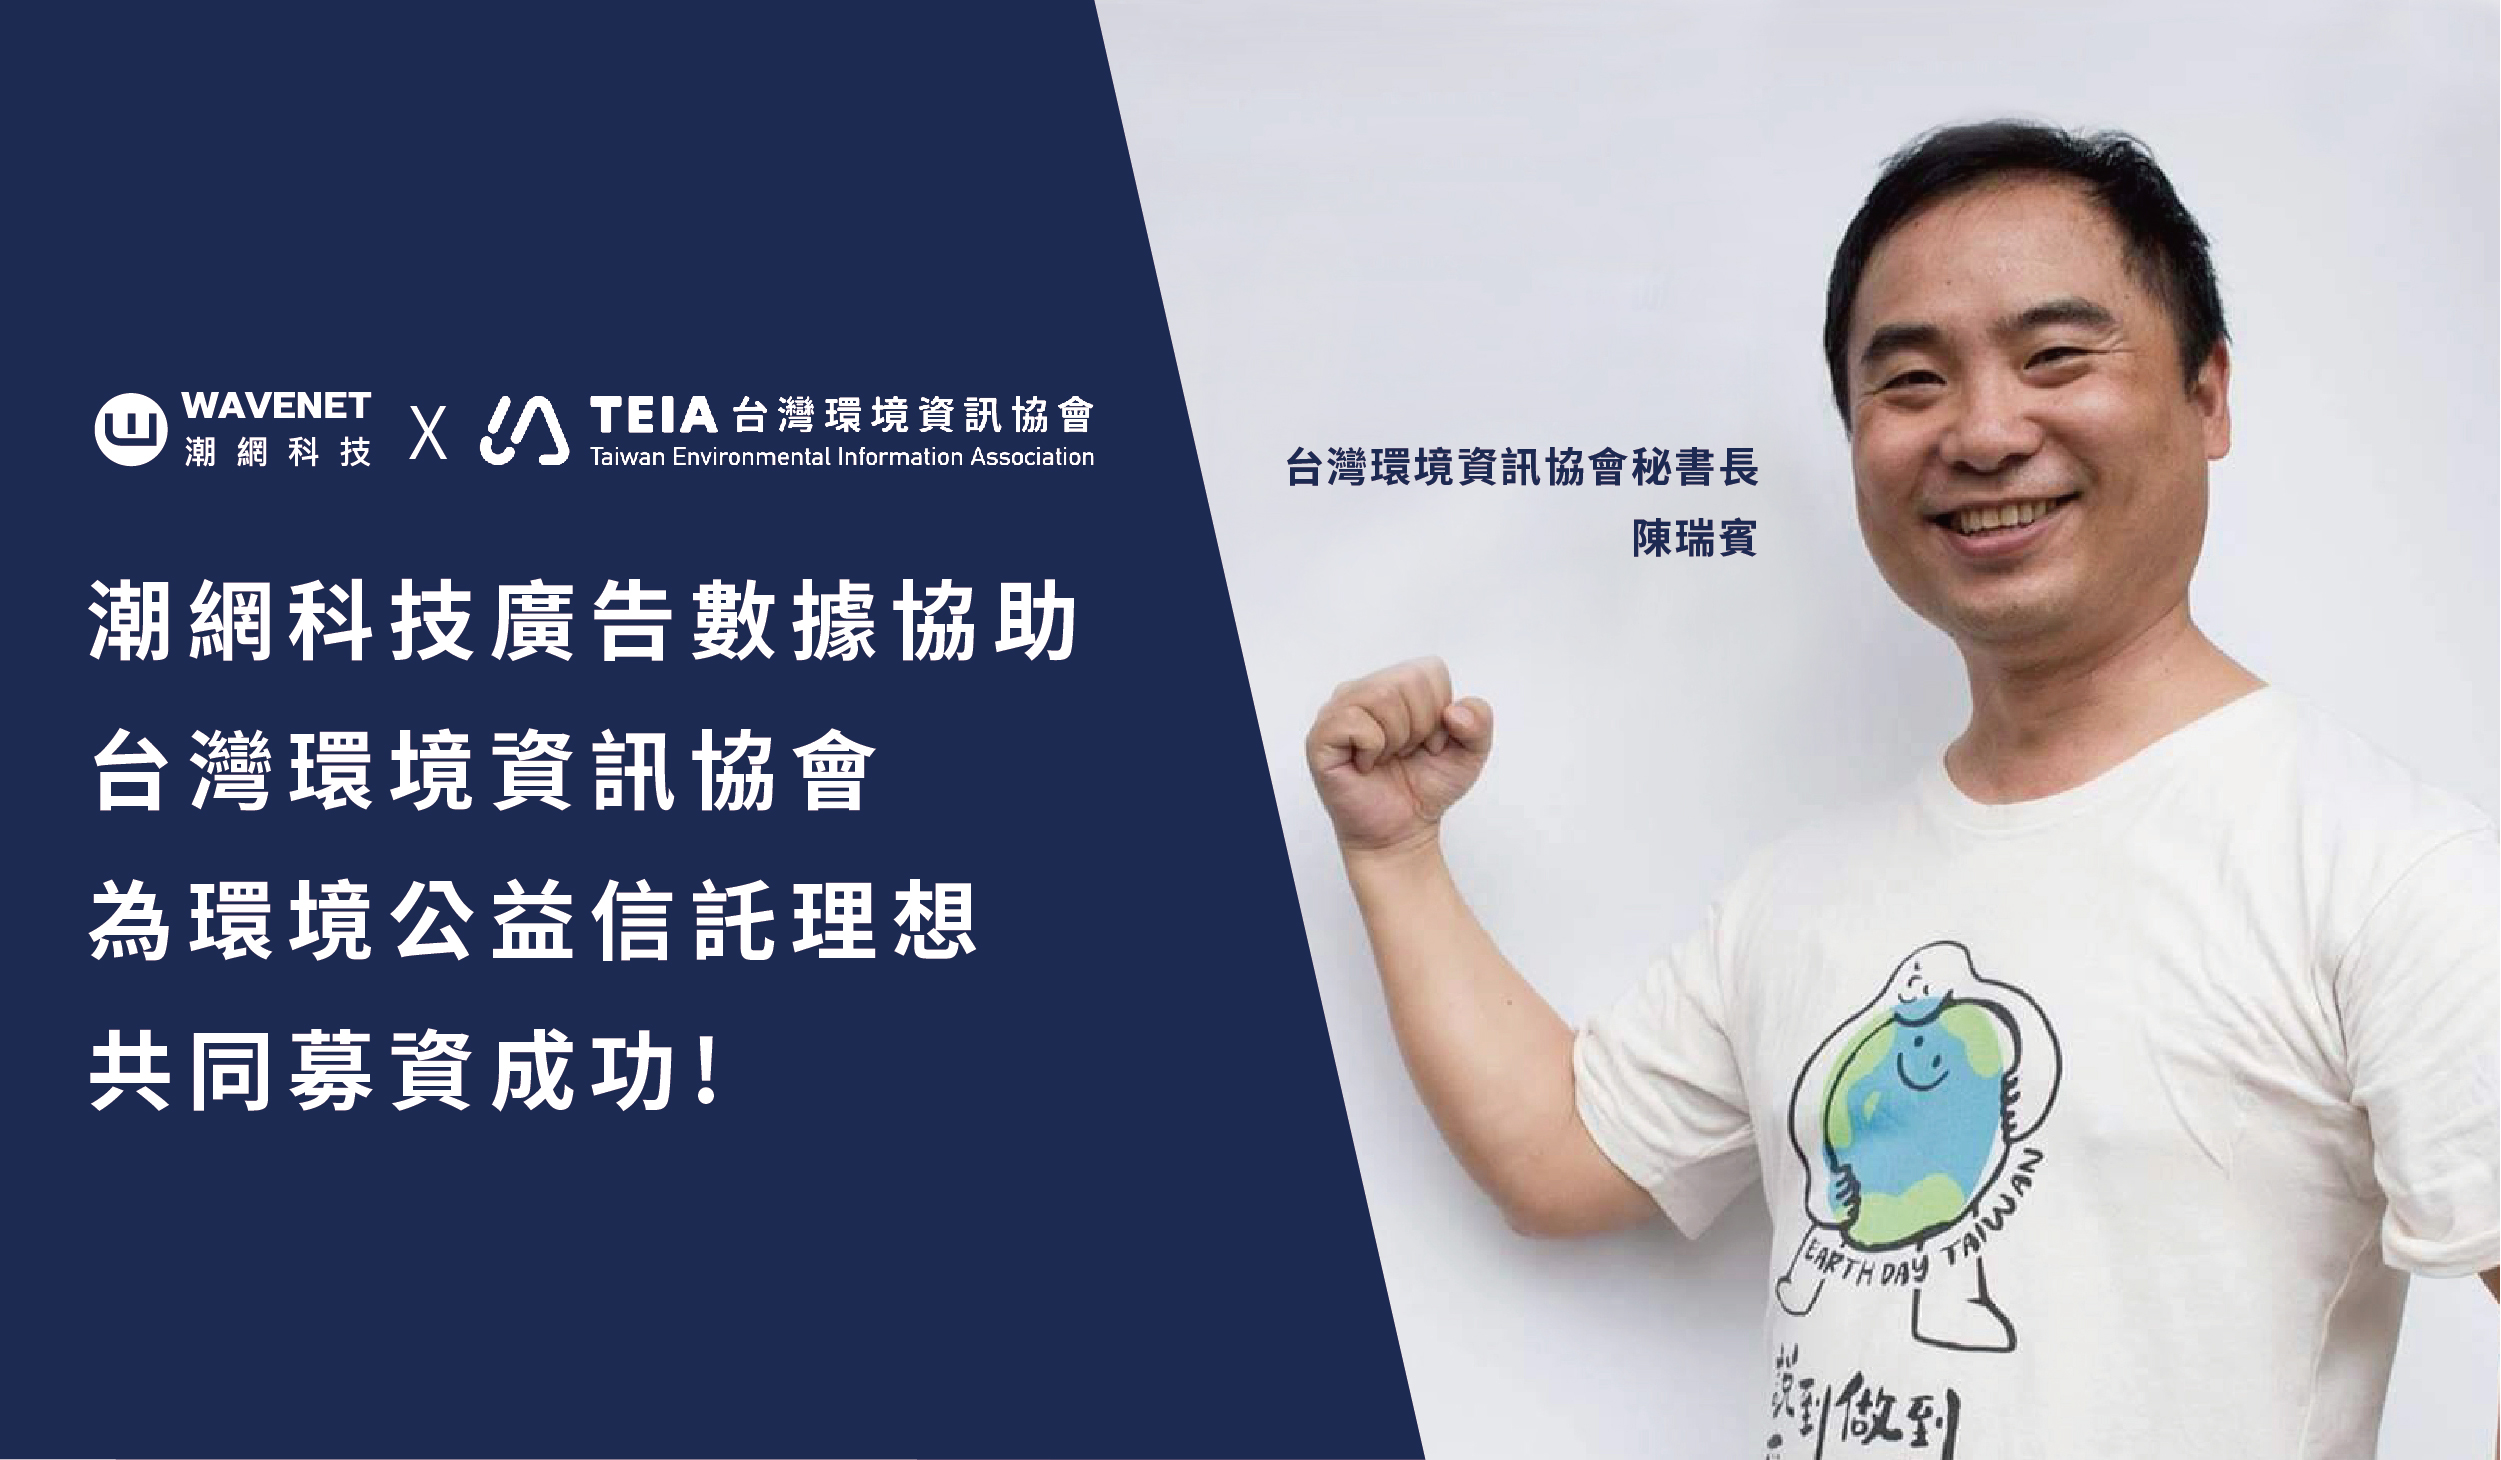 潮網科技運用資料科學和廣告科技，協助台灣環境資訊協會提升募款效能